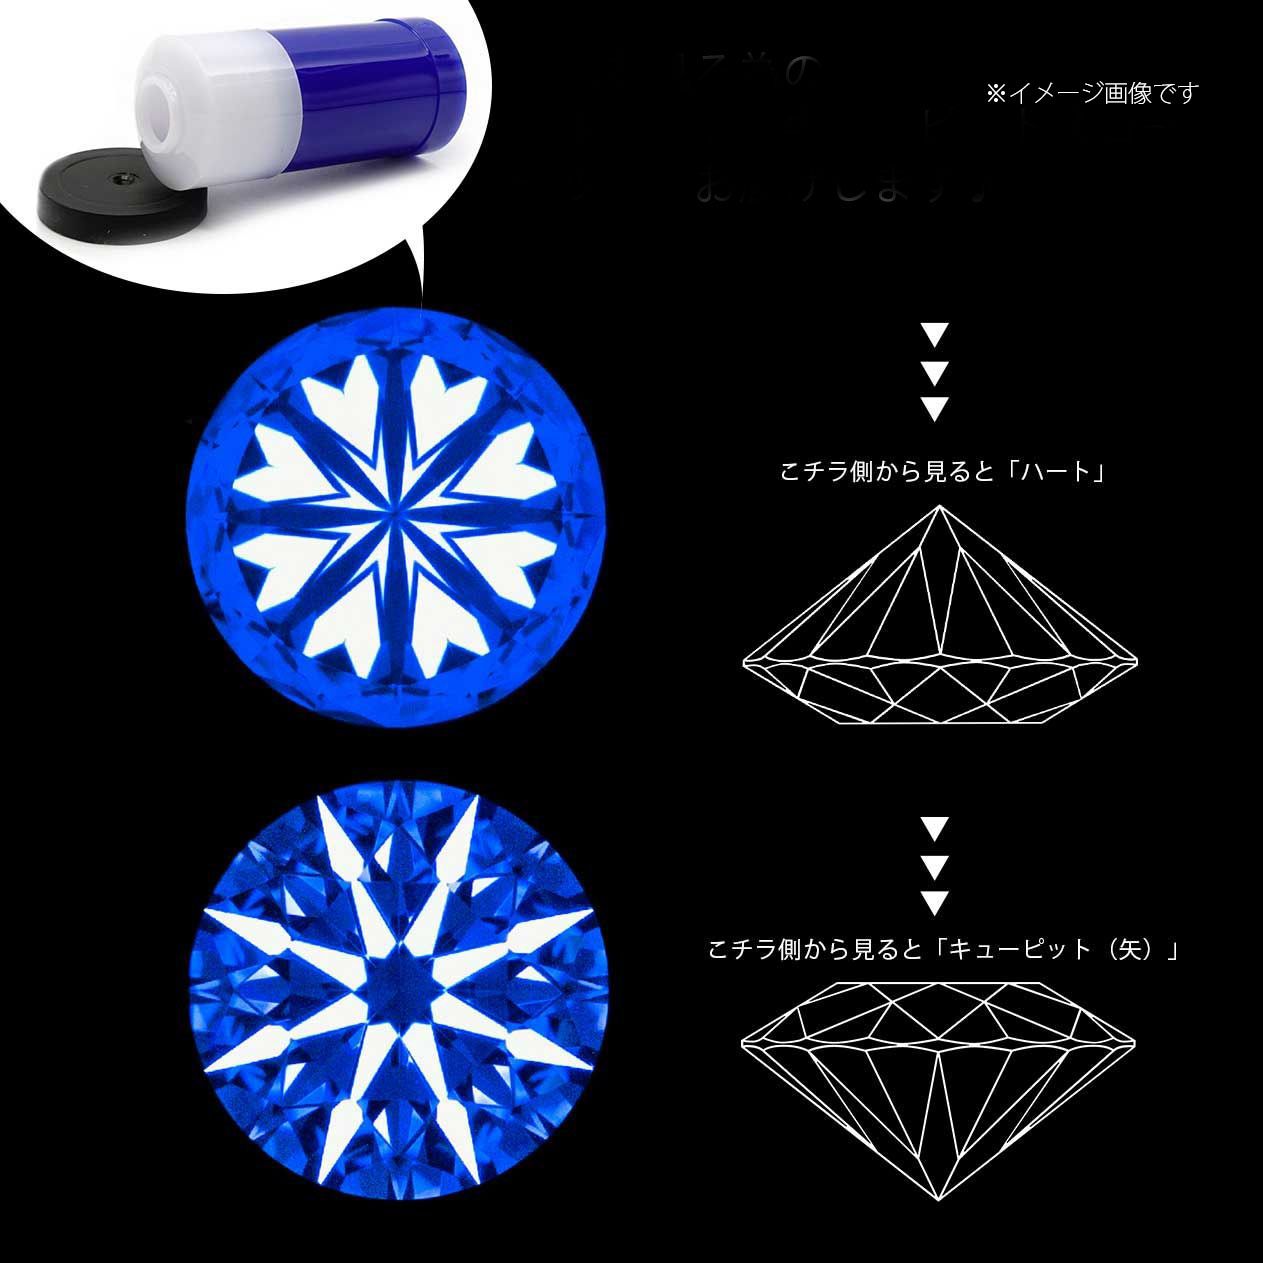 ダイヤモンド SI1-VS/TTLC ハート&キューピッド(宝石名ダイアモンド